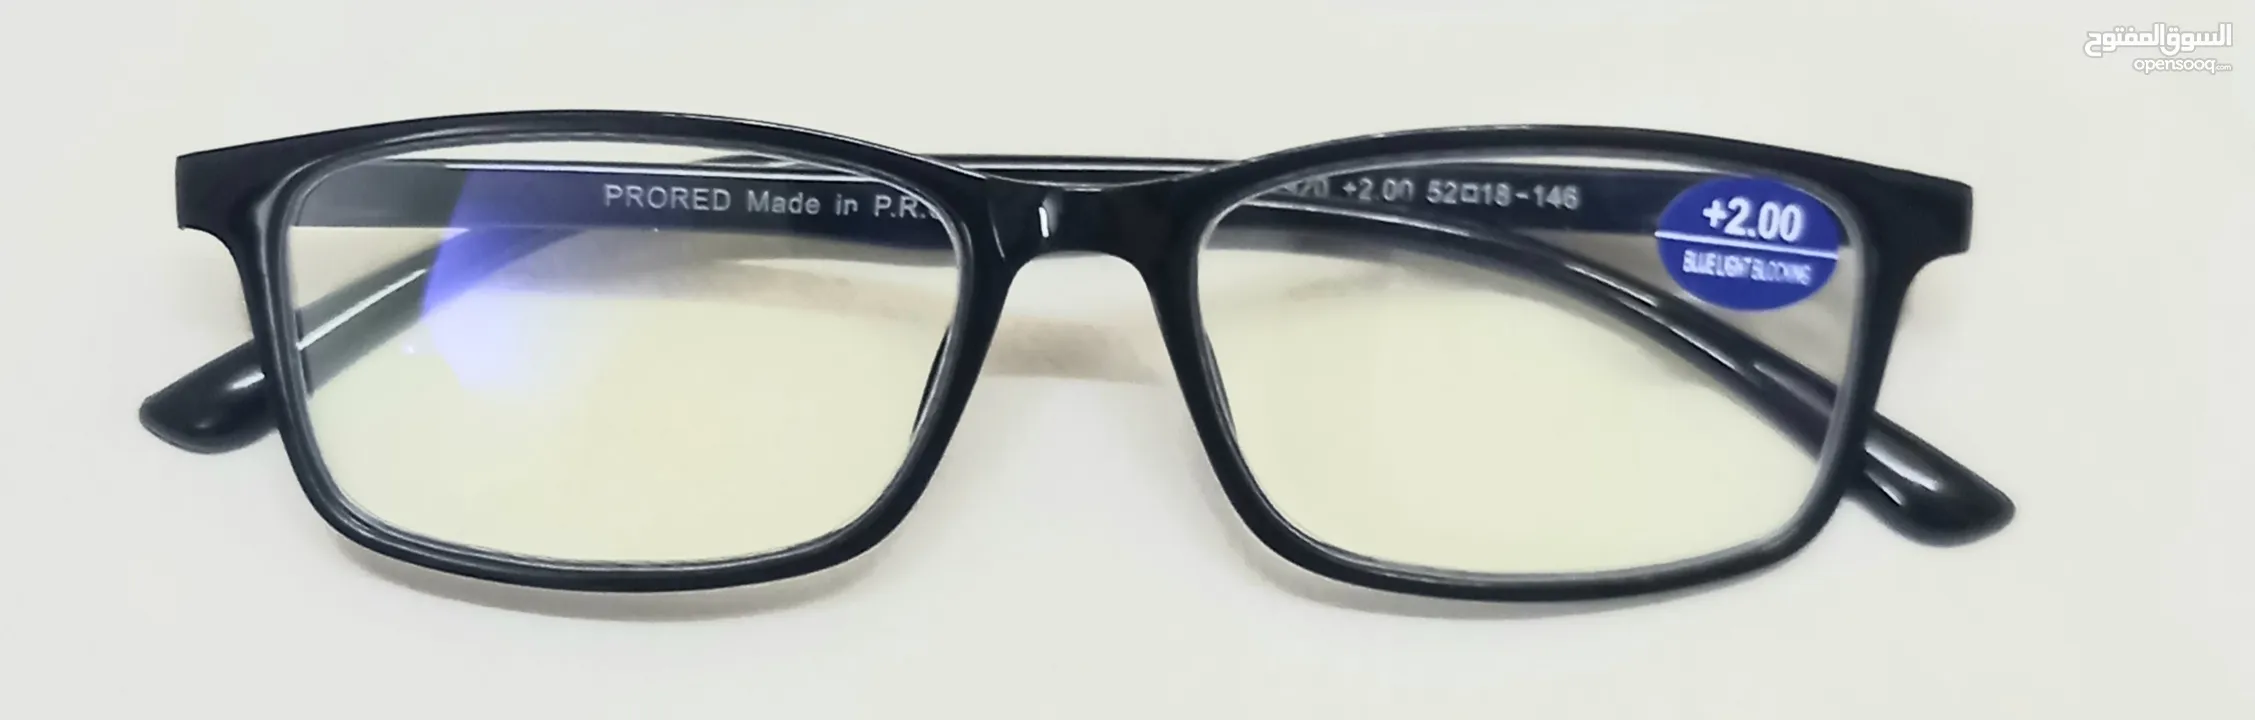 نظارات قراءة جاهزة مزودة بمادة Blue     نظارات قراءة جاهزة